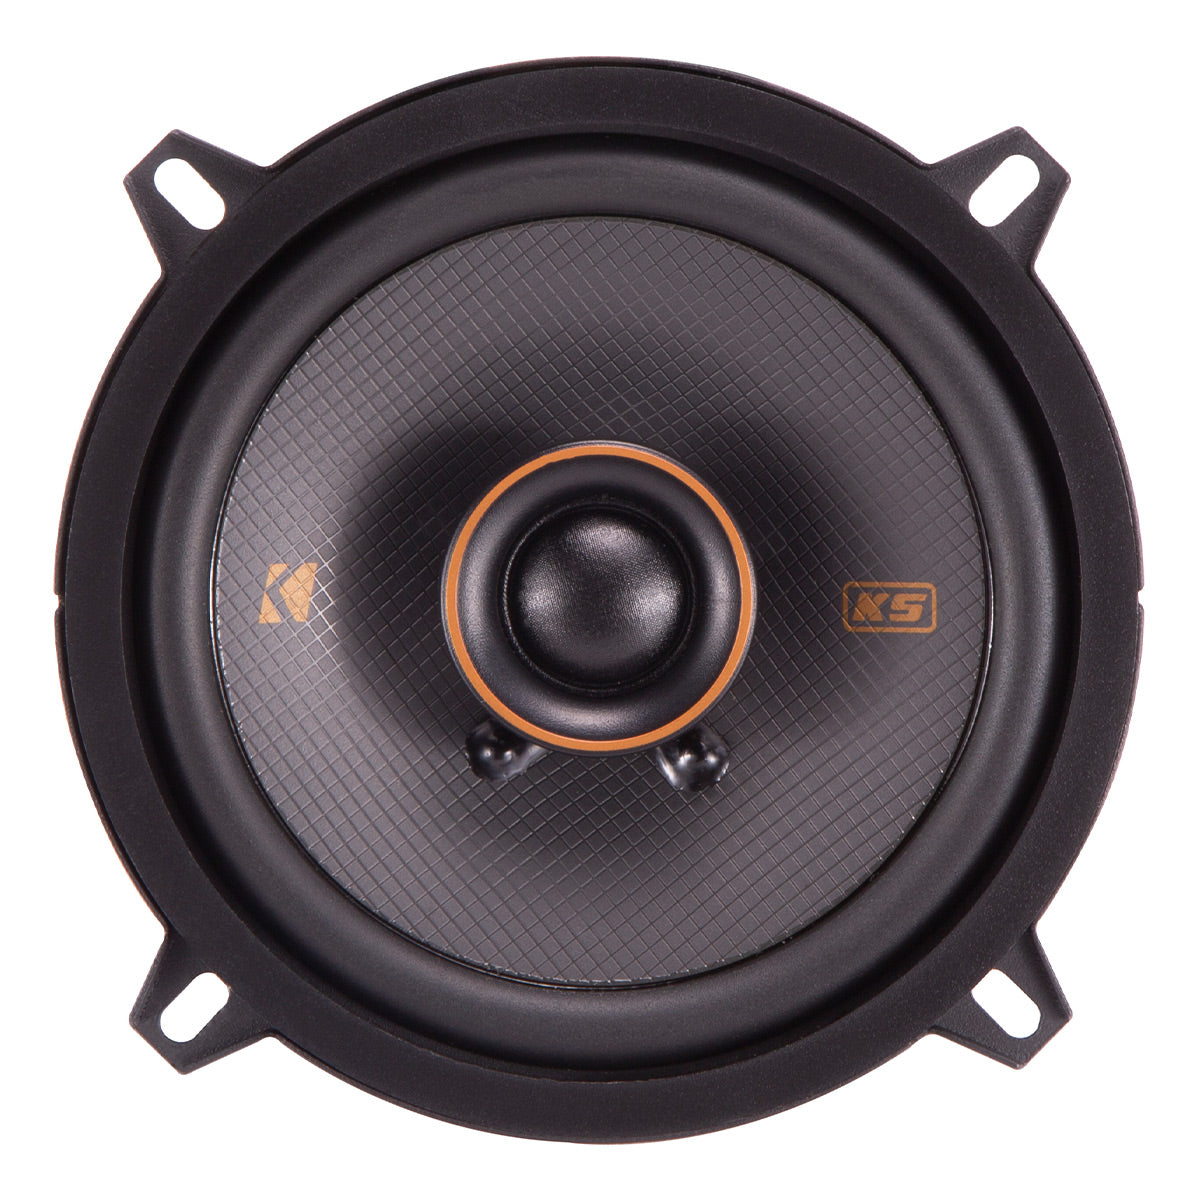 Kicker 51KSC504 5.25" KS Series Coaxial Speakers - Pair